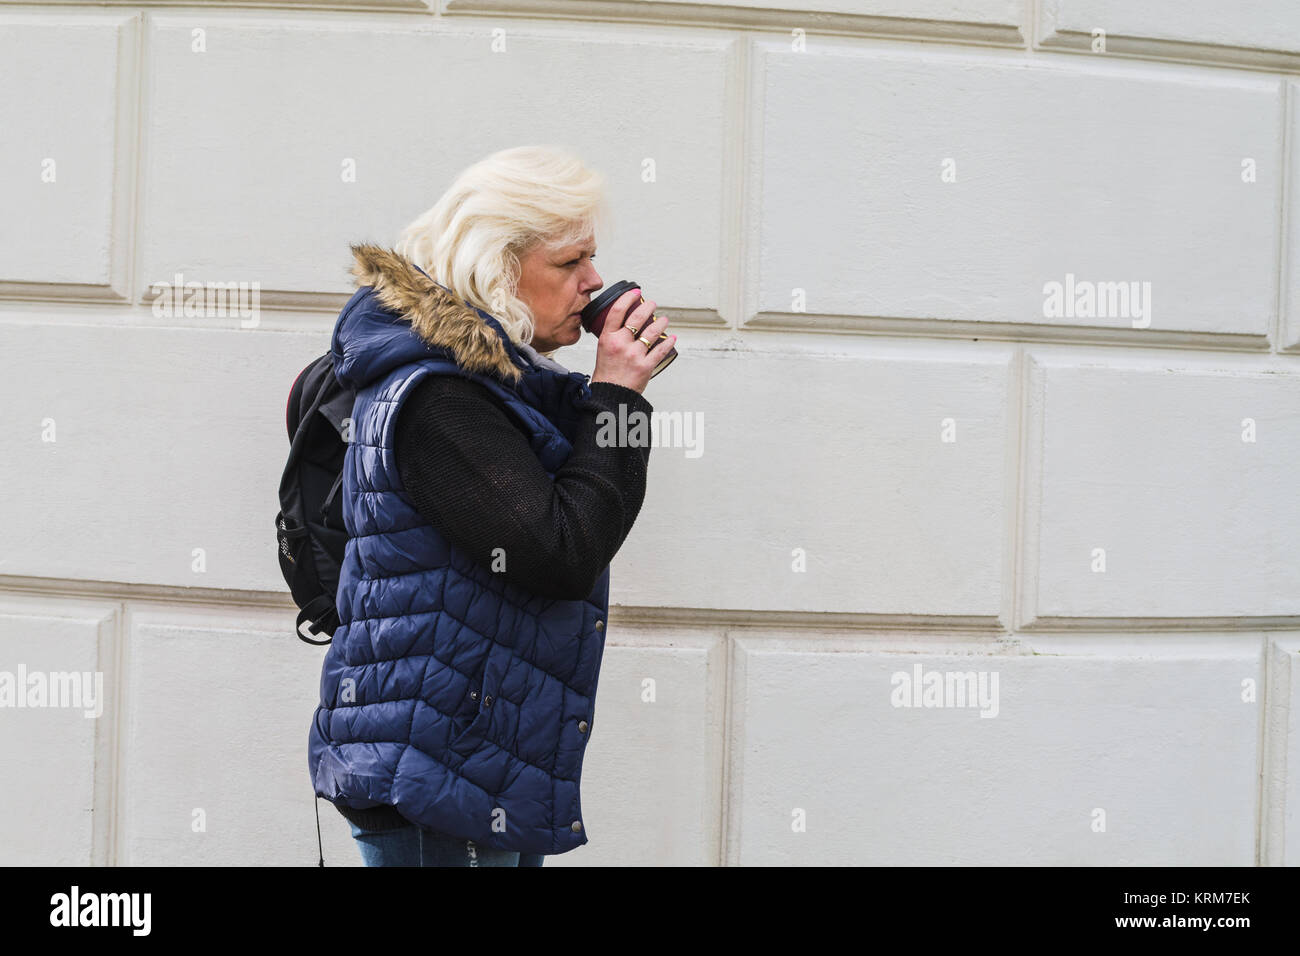 Seitenporträt einer blonden Frau mit einem Kaffee to go. Stock Photo